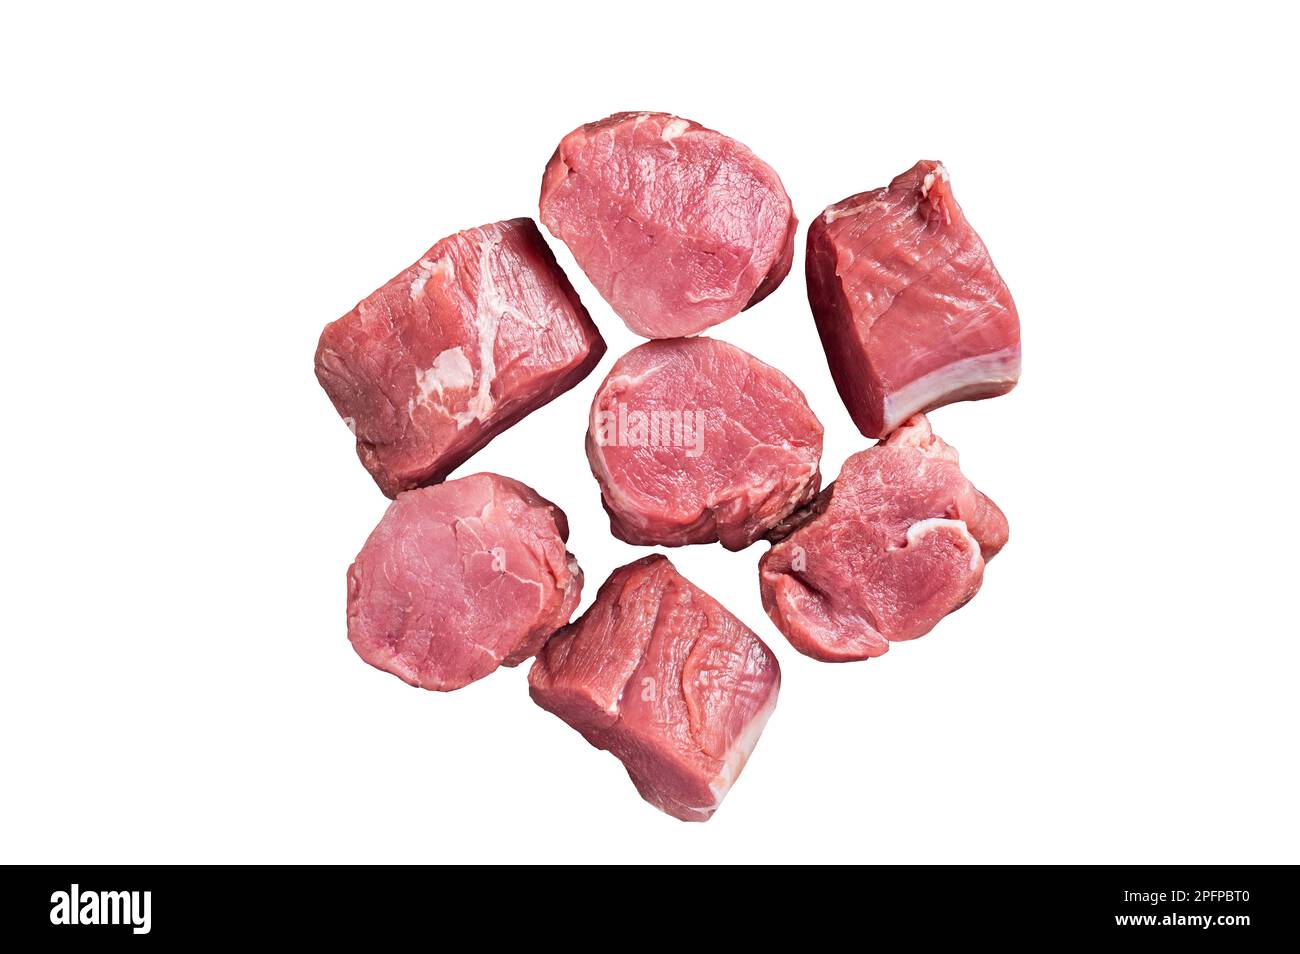 Raw pork tenderloin medallions steaks. Isolated on white background Stock Photo